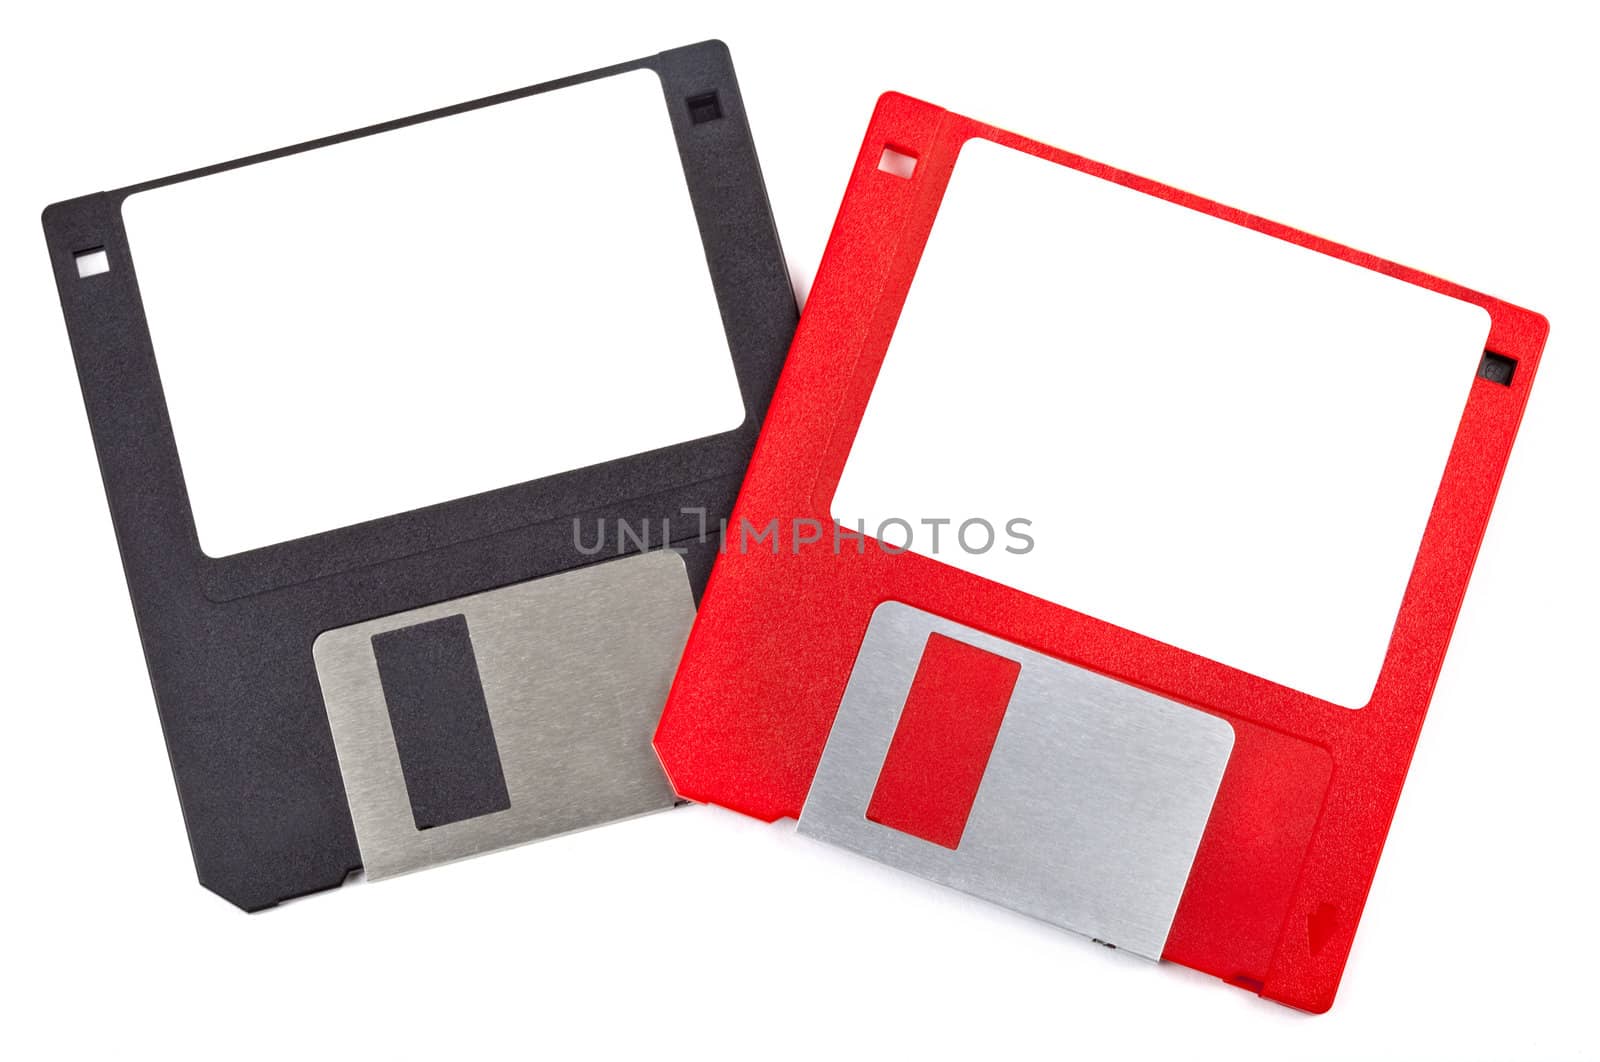 Floppy Disks by chrisdorney